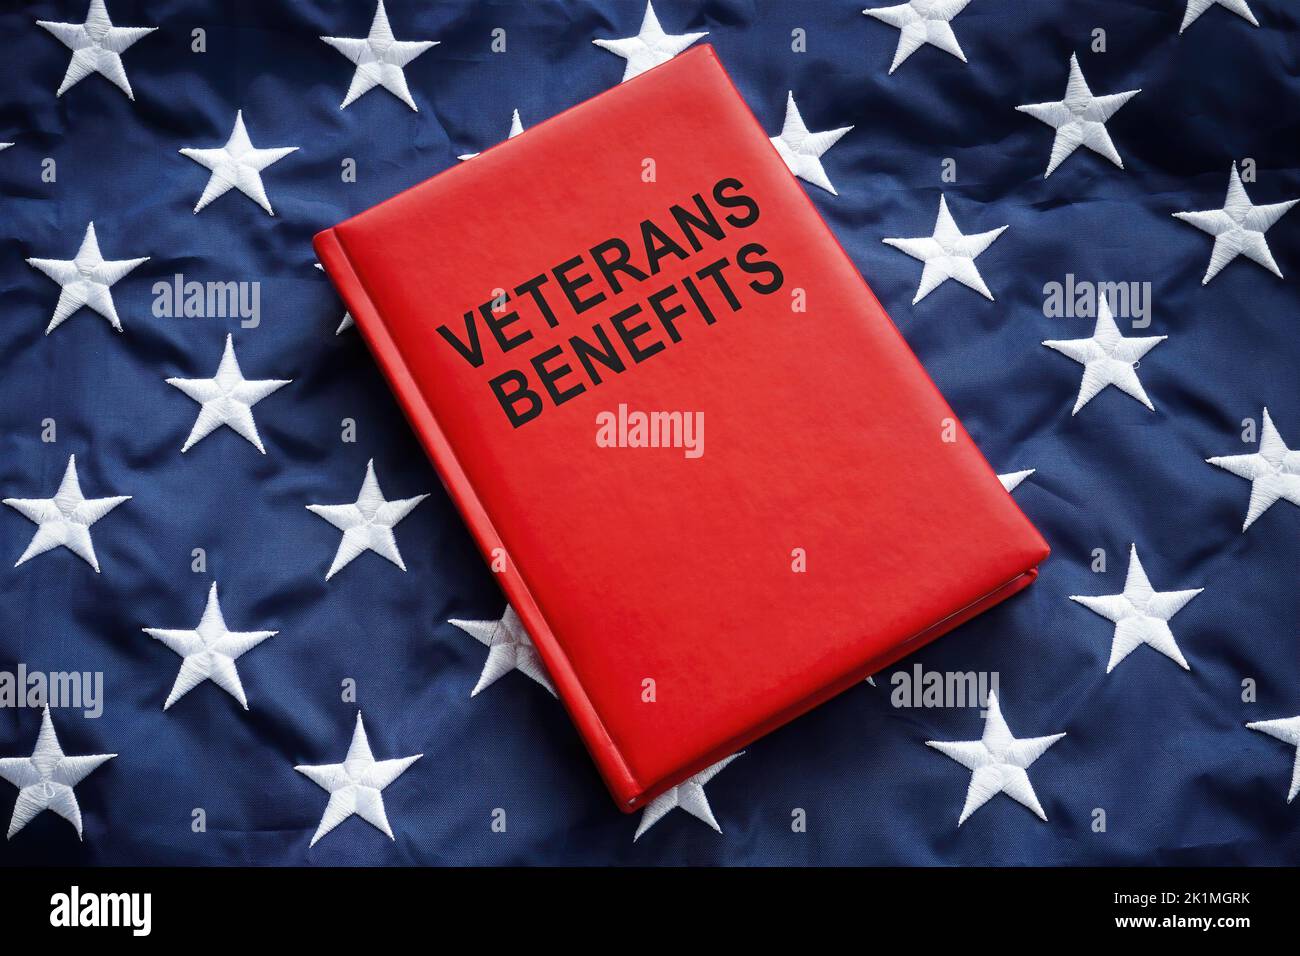 Prenota veterani benefici su una grande bandiera. Foto Stock